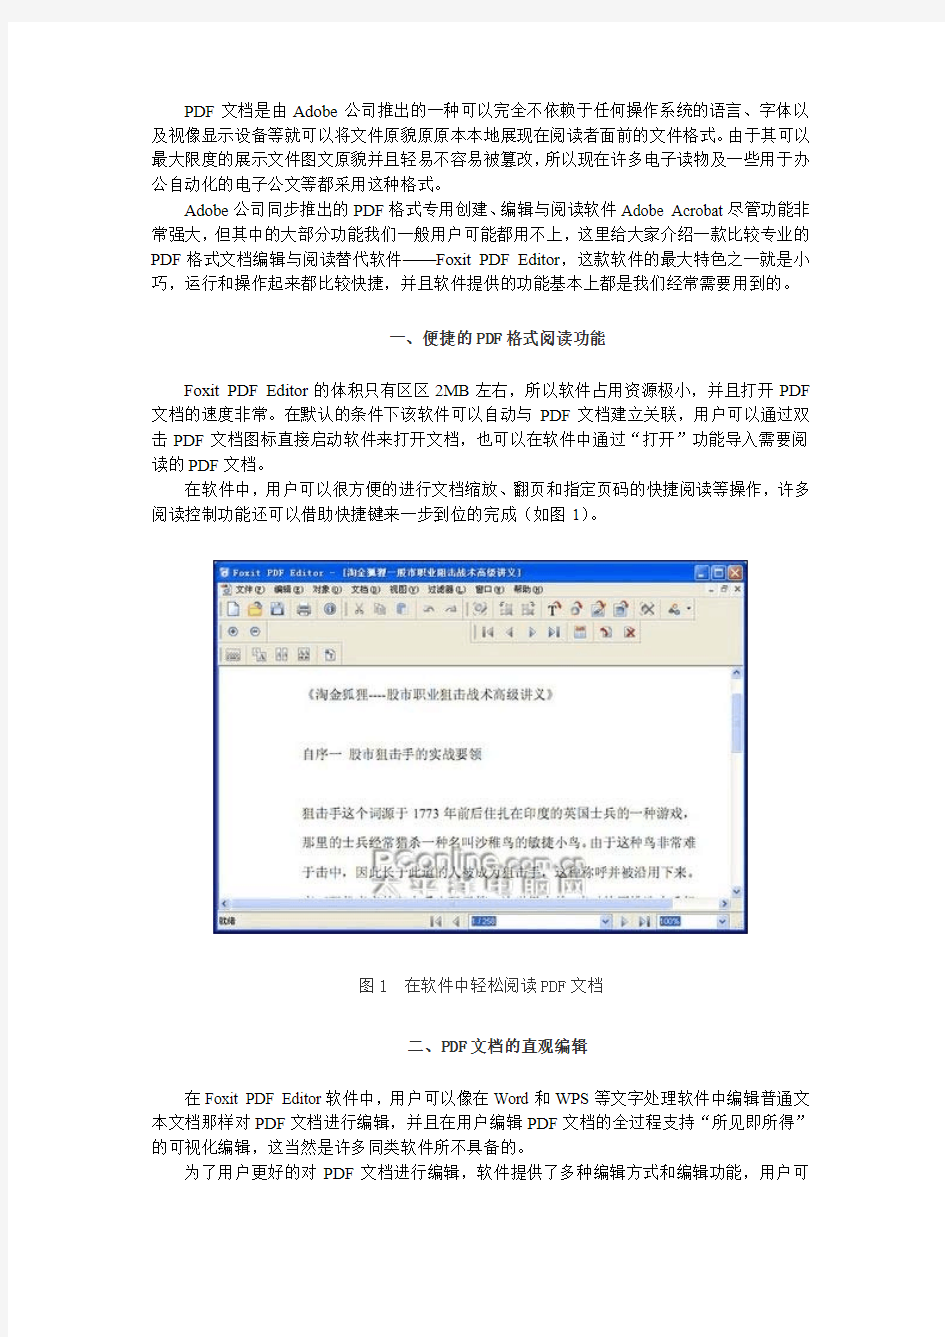 Foxit PDF Editor使用指南